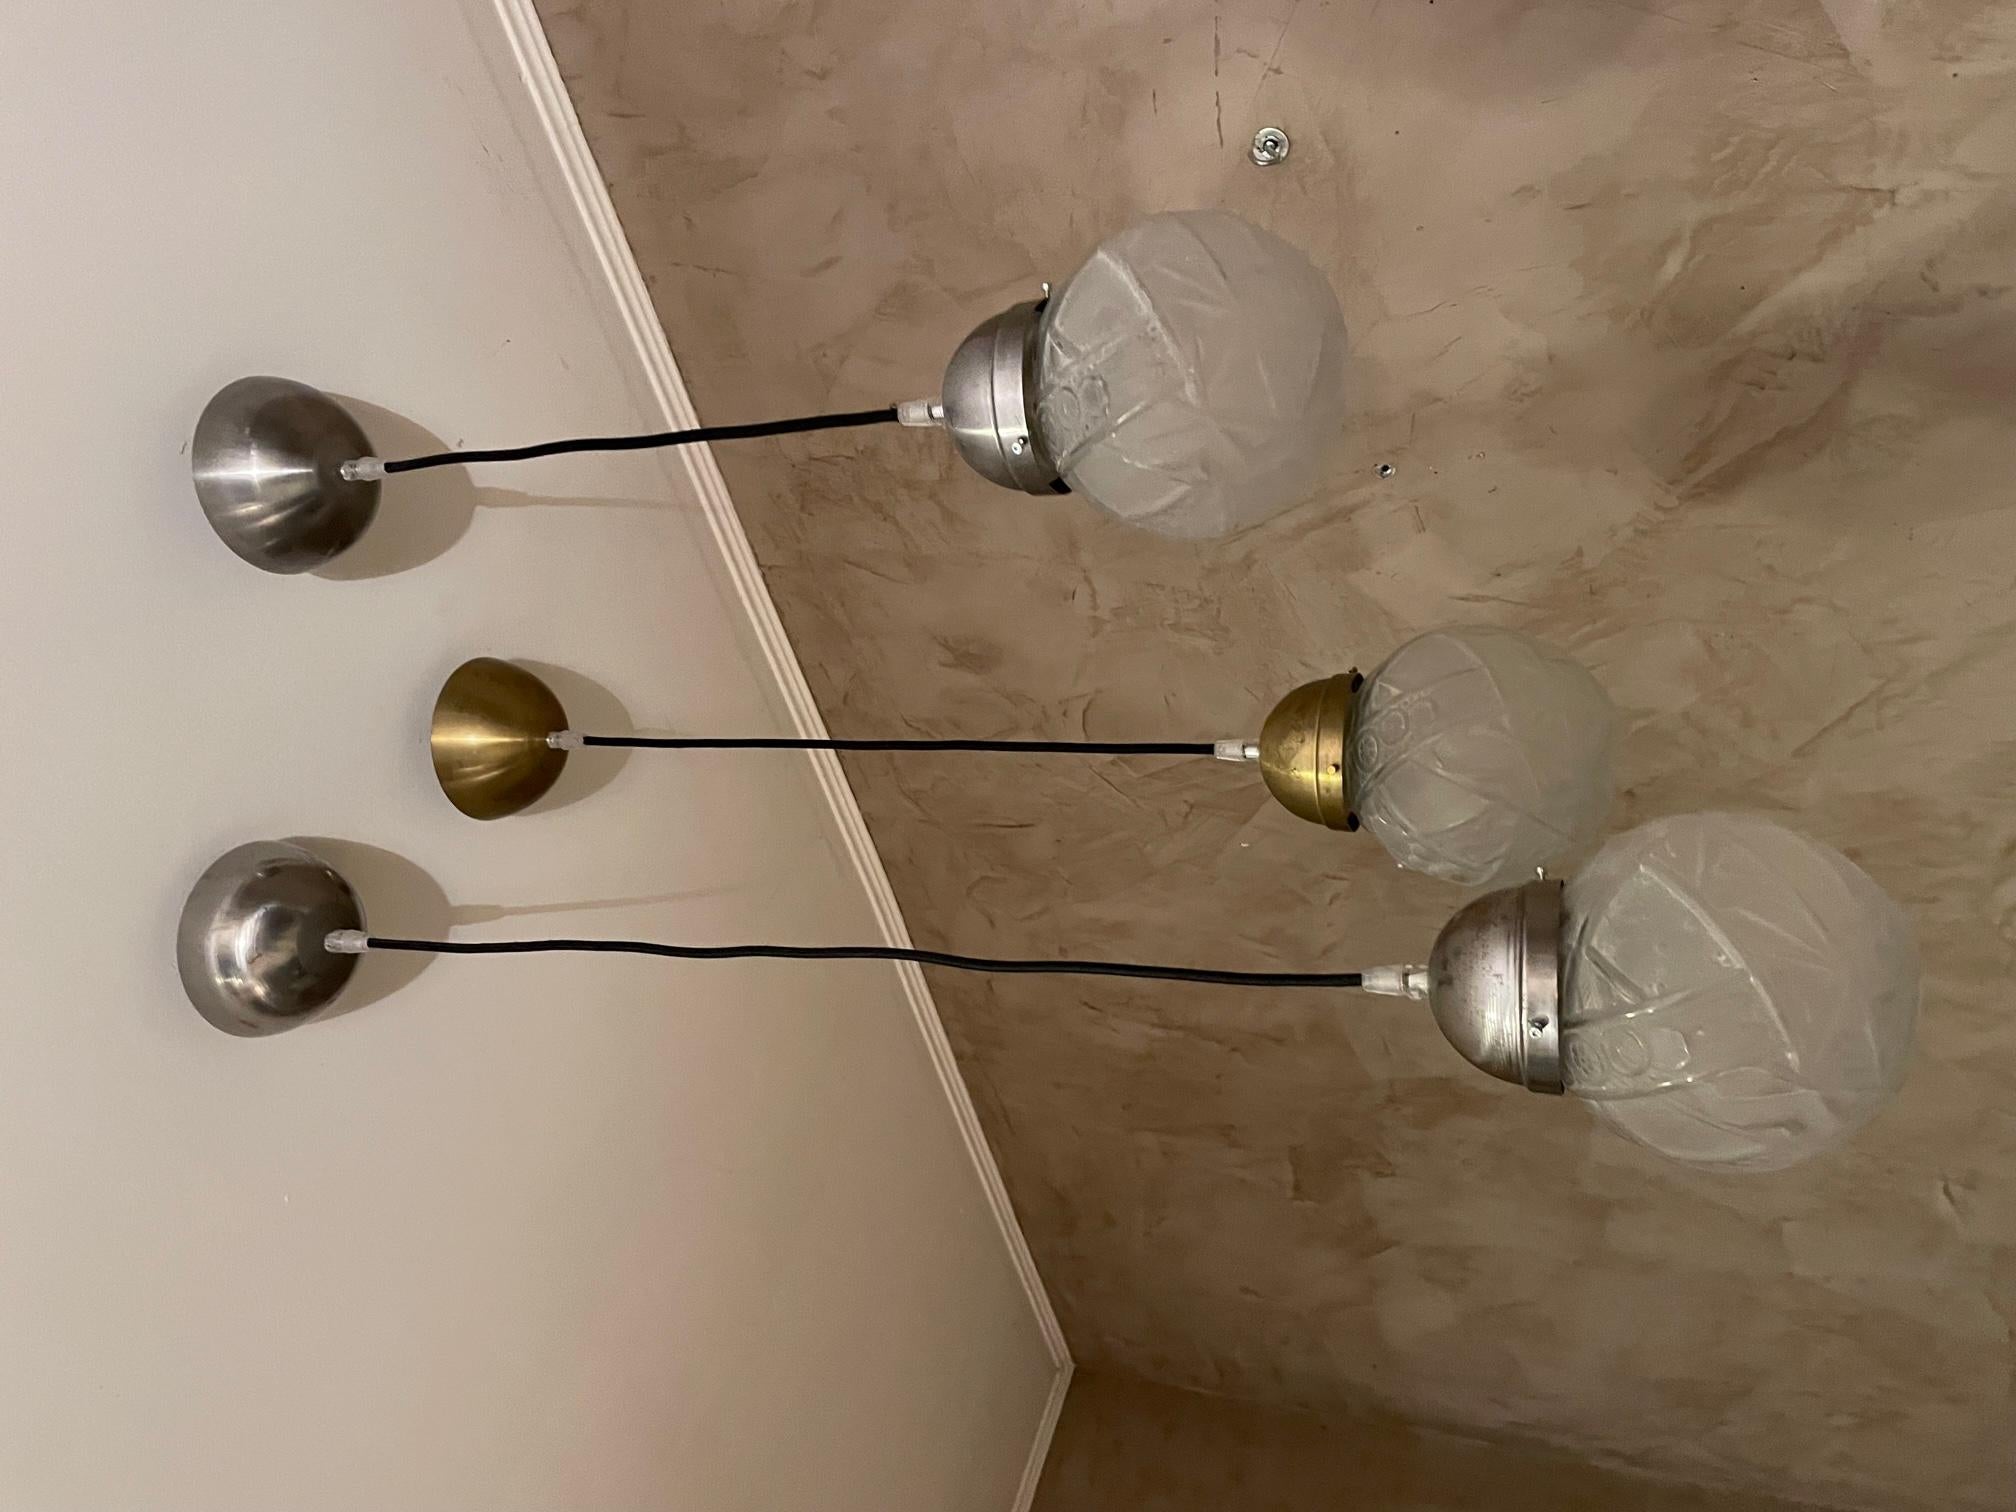 Ensemble de 3 globes art déco transformés en luminaires suspendus. Deux sont avec un support en métal chromé et l'autre est en laiton. Fil noir. Jolis globes terrestres typiques des années 30. Possibilité d'acheter individuellement. Système réglable